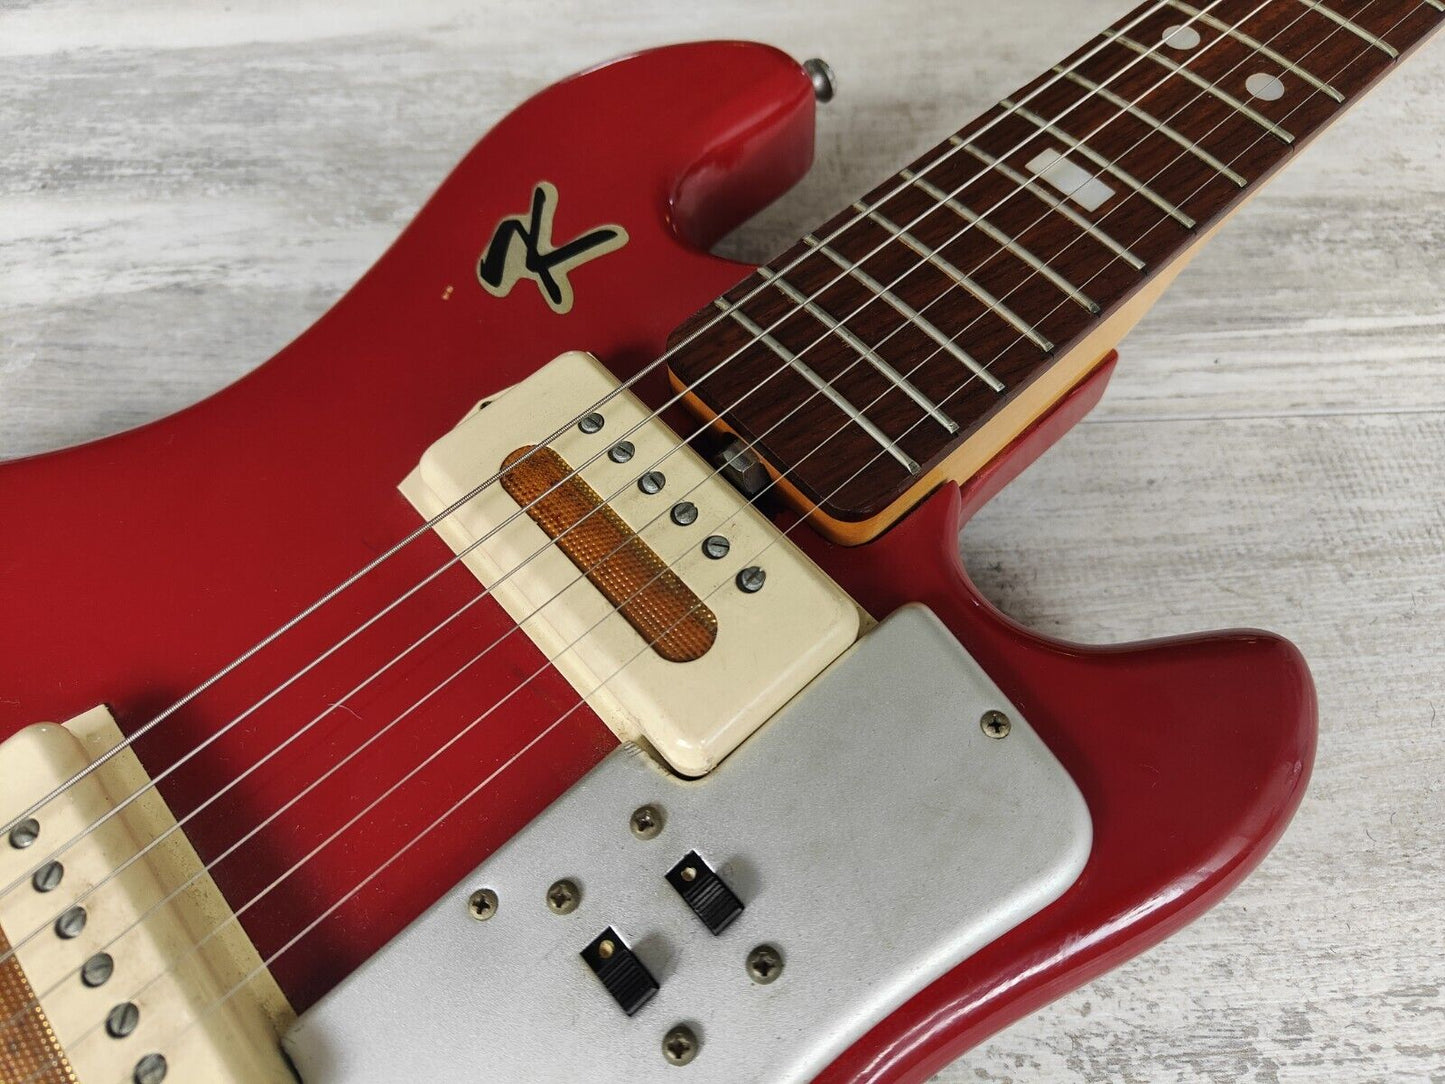 1960's Guyatone Japan LG-85T Electric Guitar (Dakota Red)